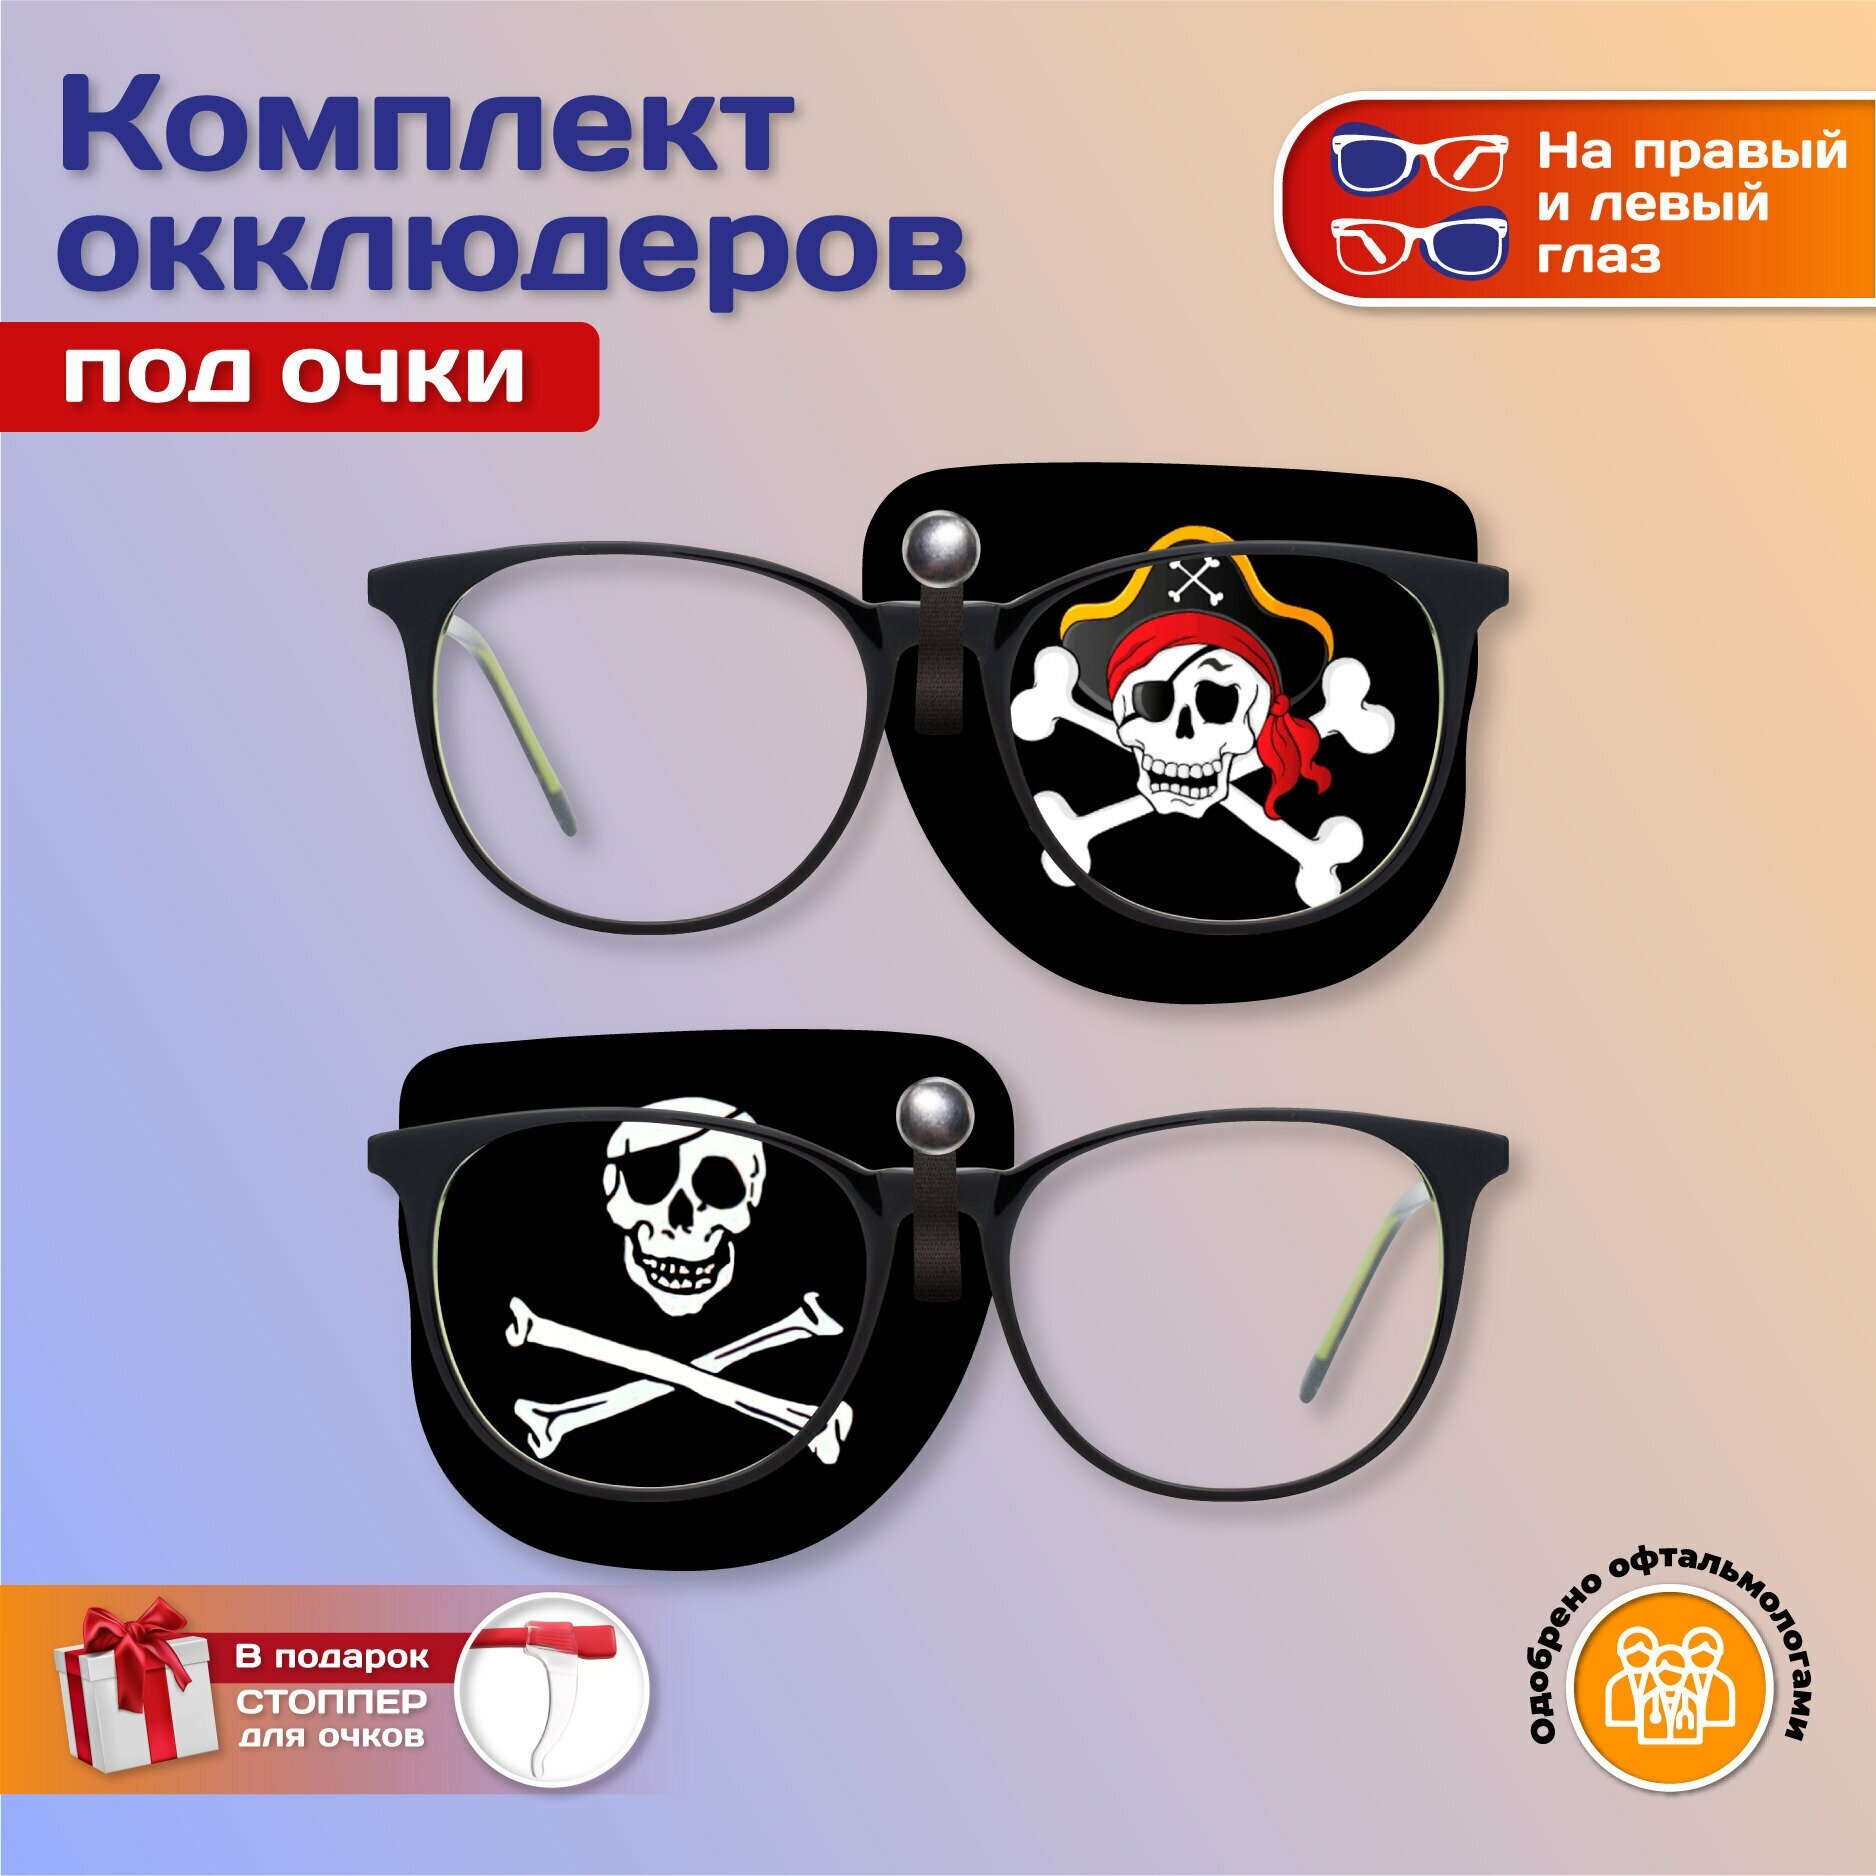 Комплект окклюдеров под очки "Пират" на левый и правый глаз